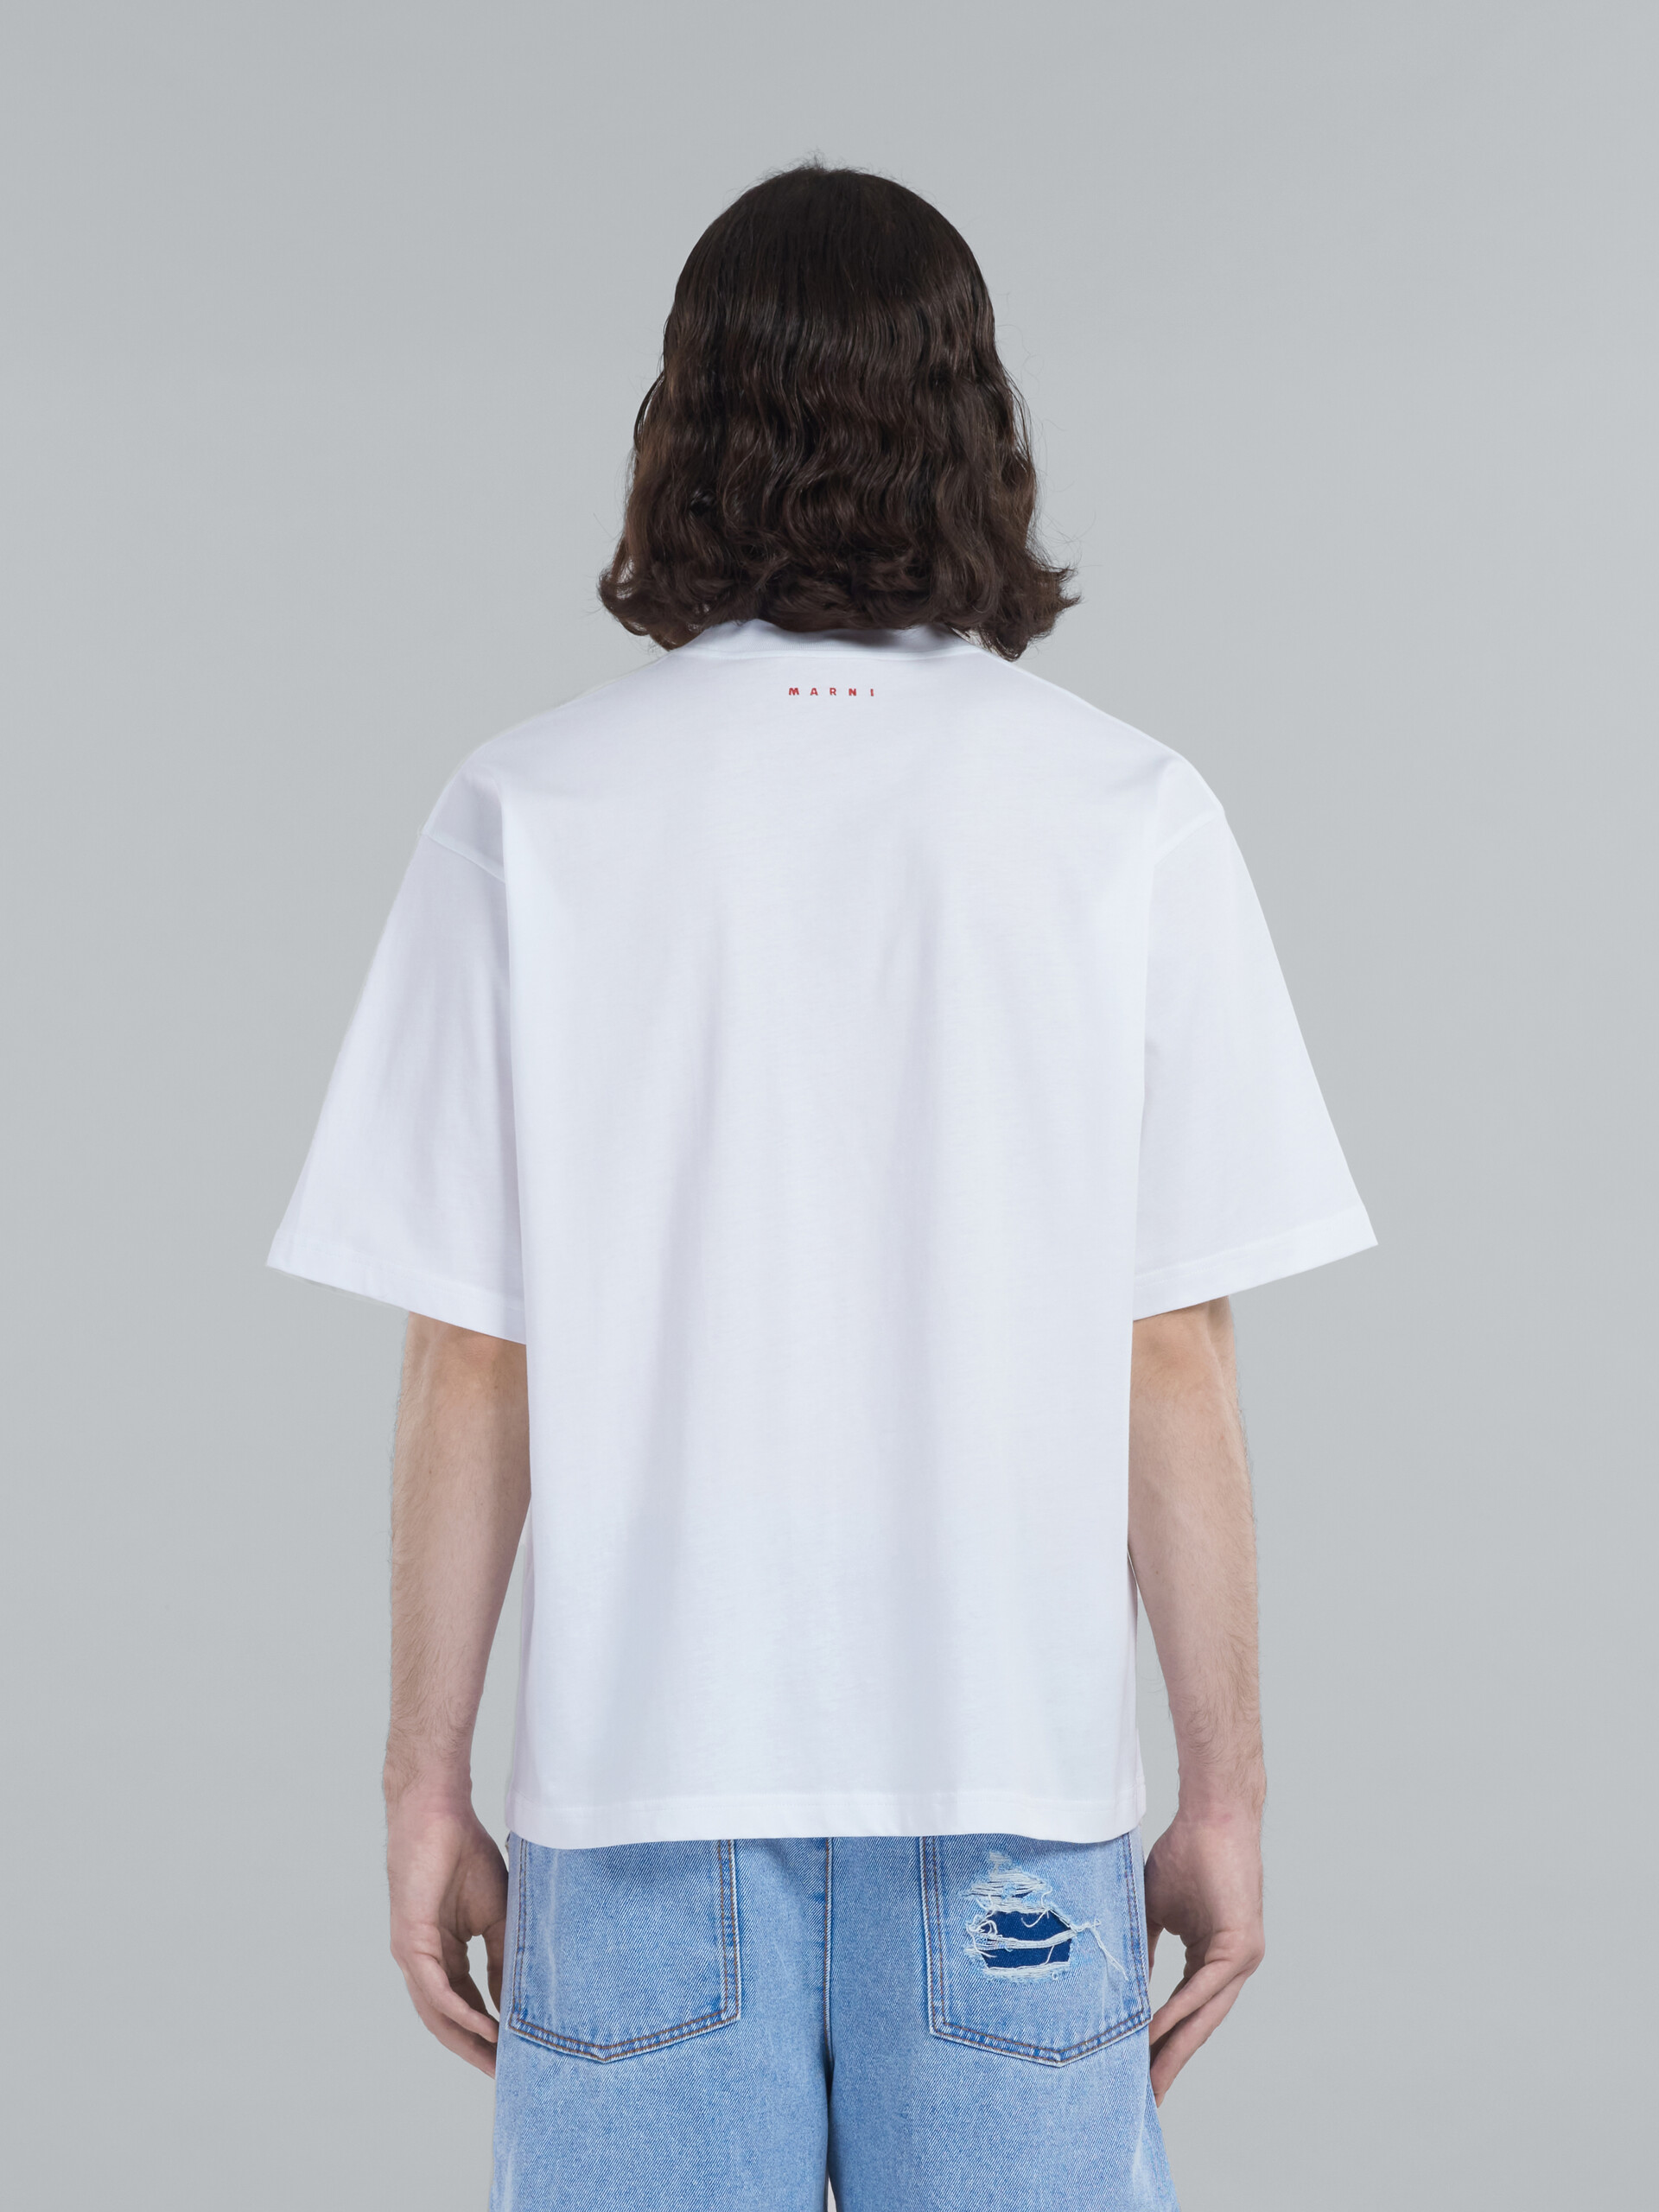 オーガニックコットン Tシャツ3枚セット(ボクシーフィット) - Tシャツ - Image 3